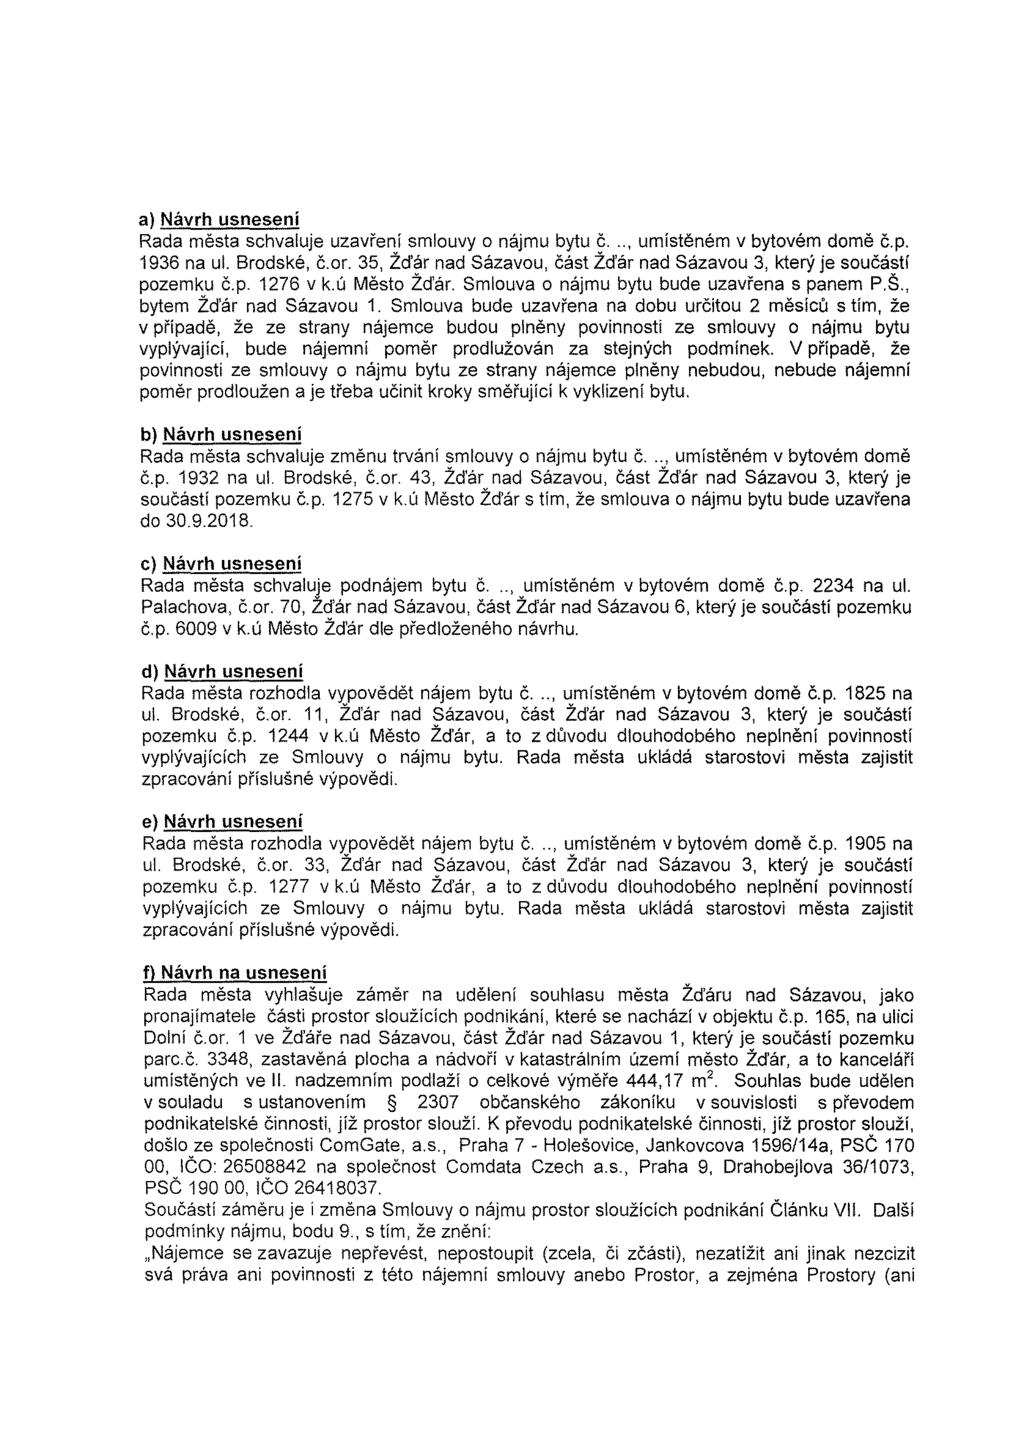 a) Návrh usnesení Rada města schvaluje uzavření smlouvy o nájmu bytu č..., umístěném v bytovém domě č.p. 1936 na ul. Brodské, č.or.